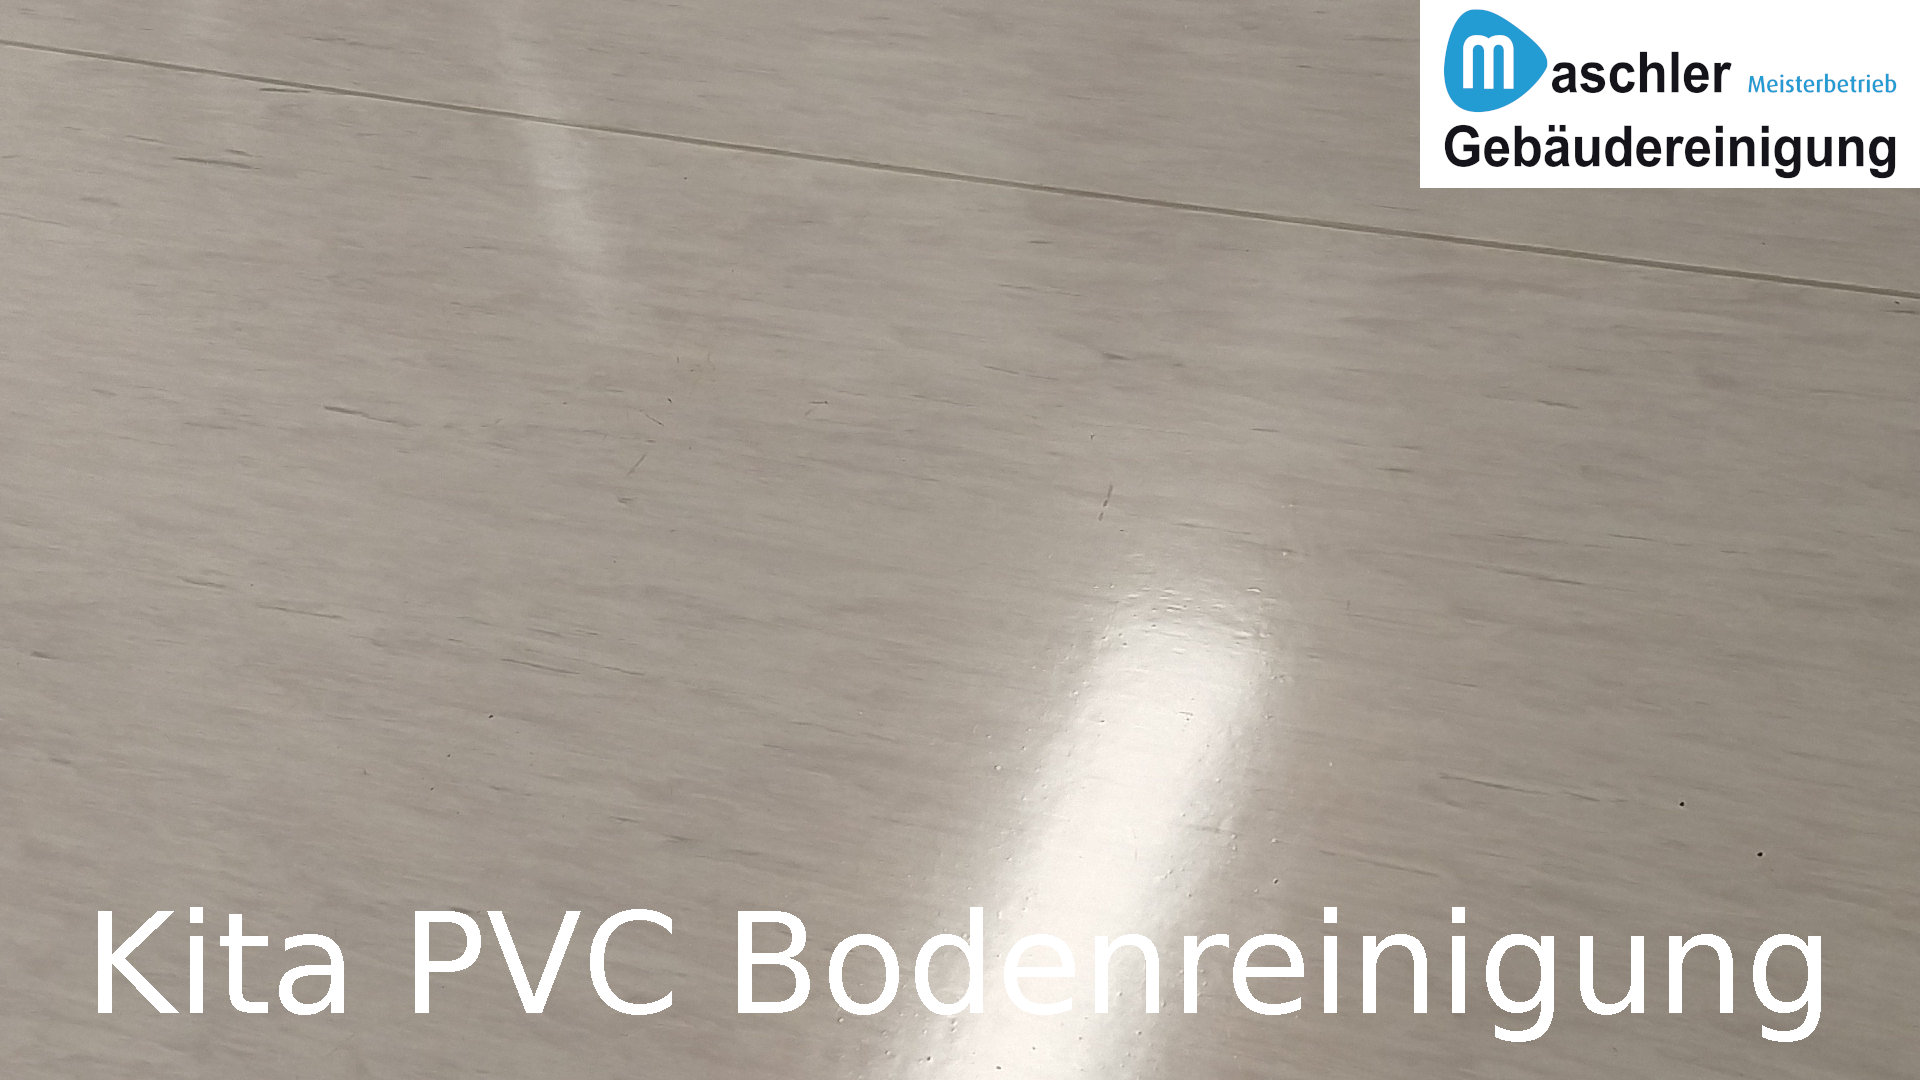 Kindergarten PVC Boden Grundreinigung - Gebäudereinigung Maschler Schwerin